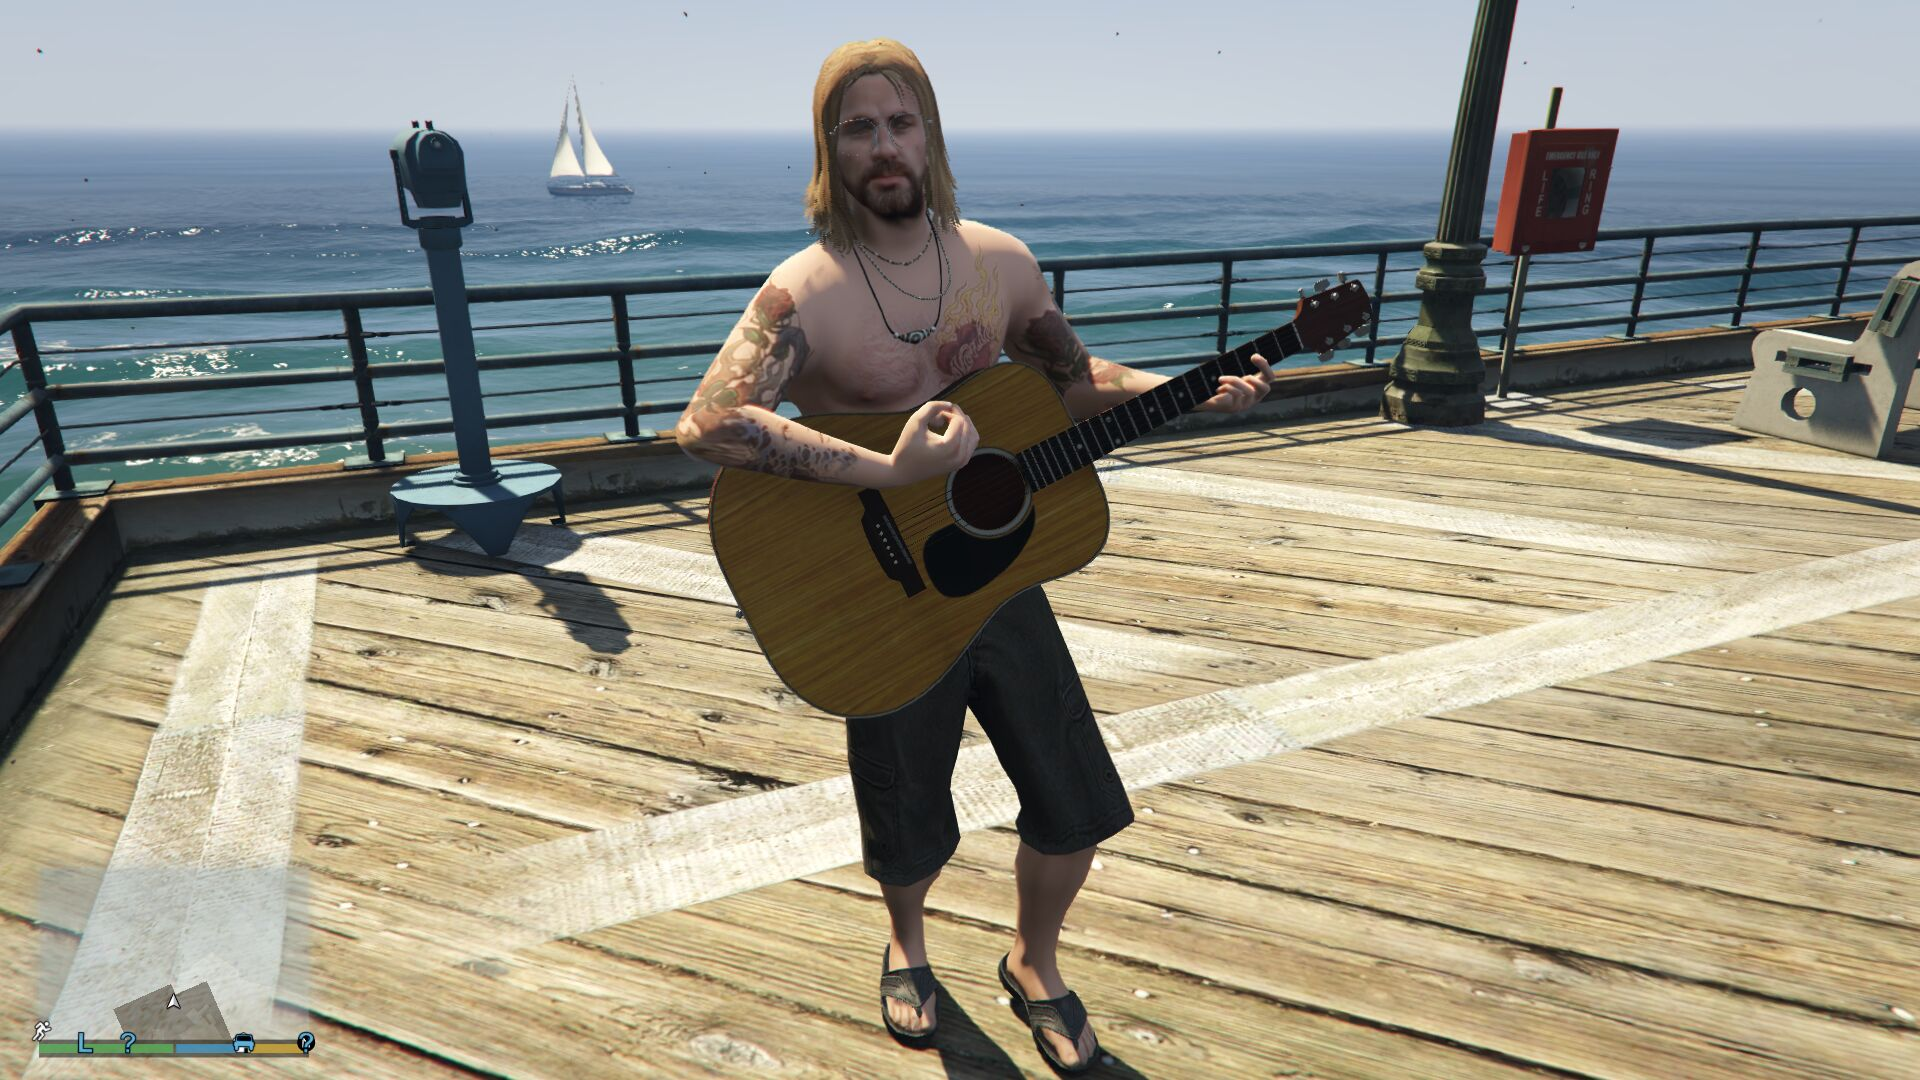 Стример устроил в Grand Theft Auto 5 онлайн-концерт для тысяч зрителей - фото 1